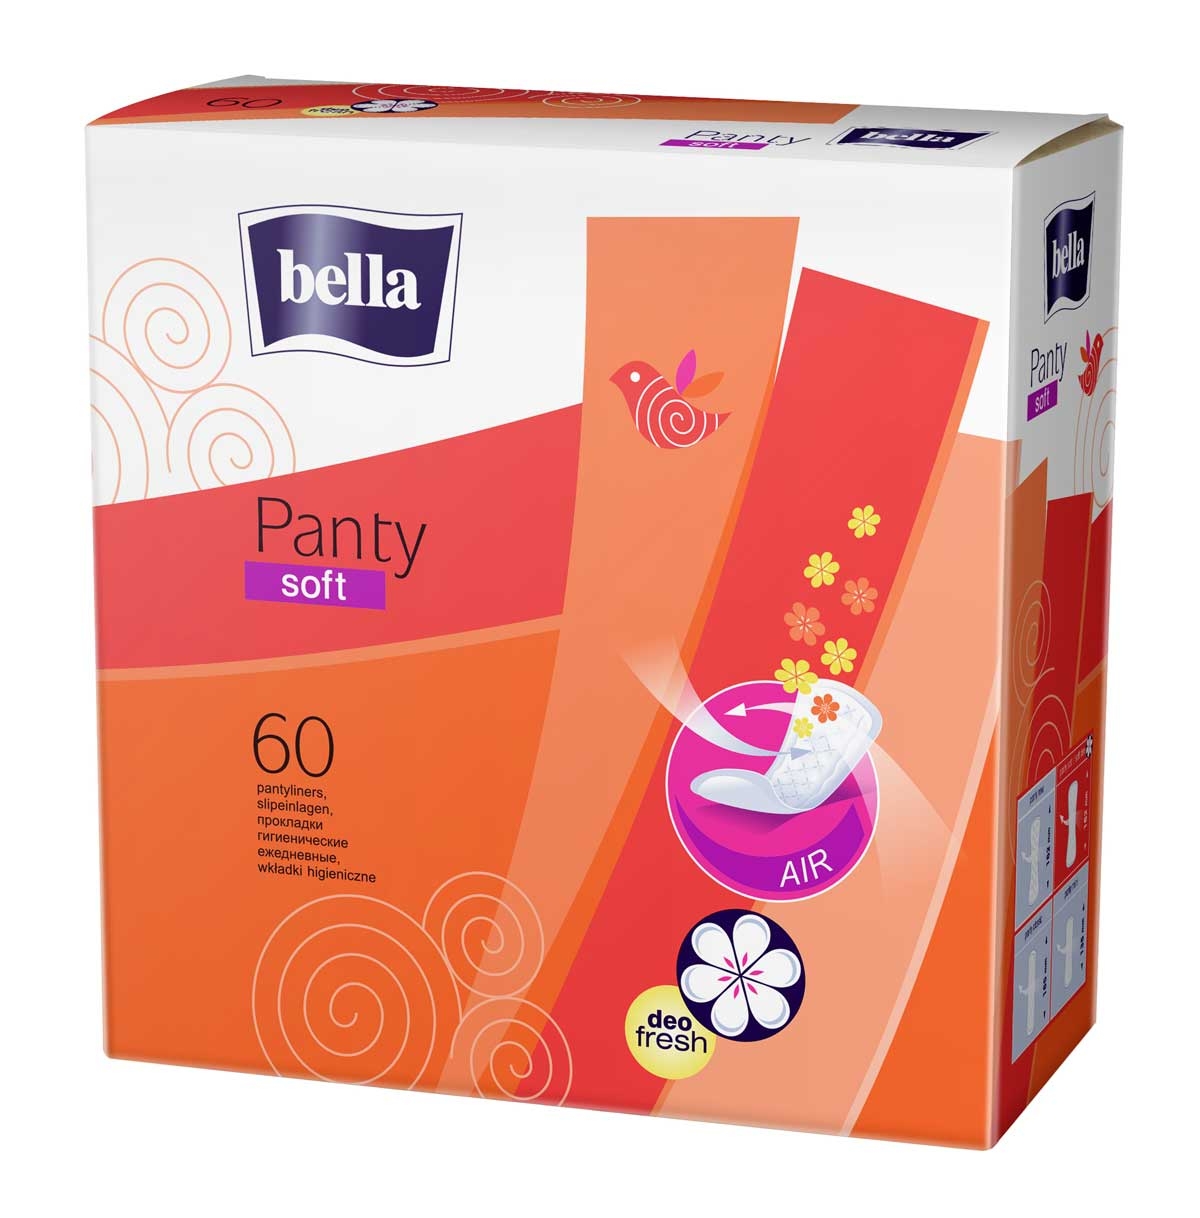 Bella Panty Slipeinlagen "Soft Deo Fresh" (mit Duft) - 60 Stück Packung